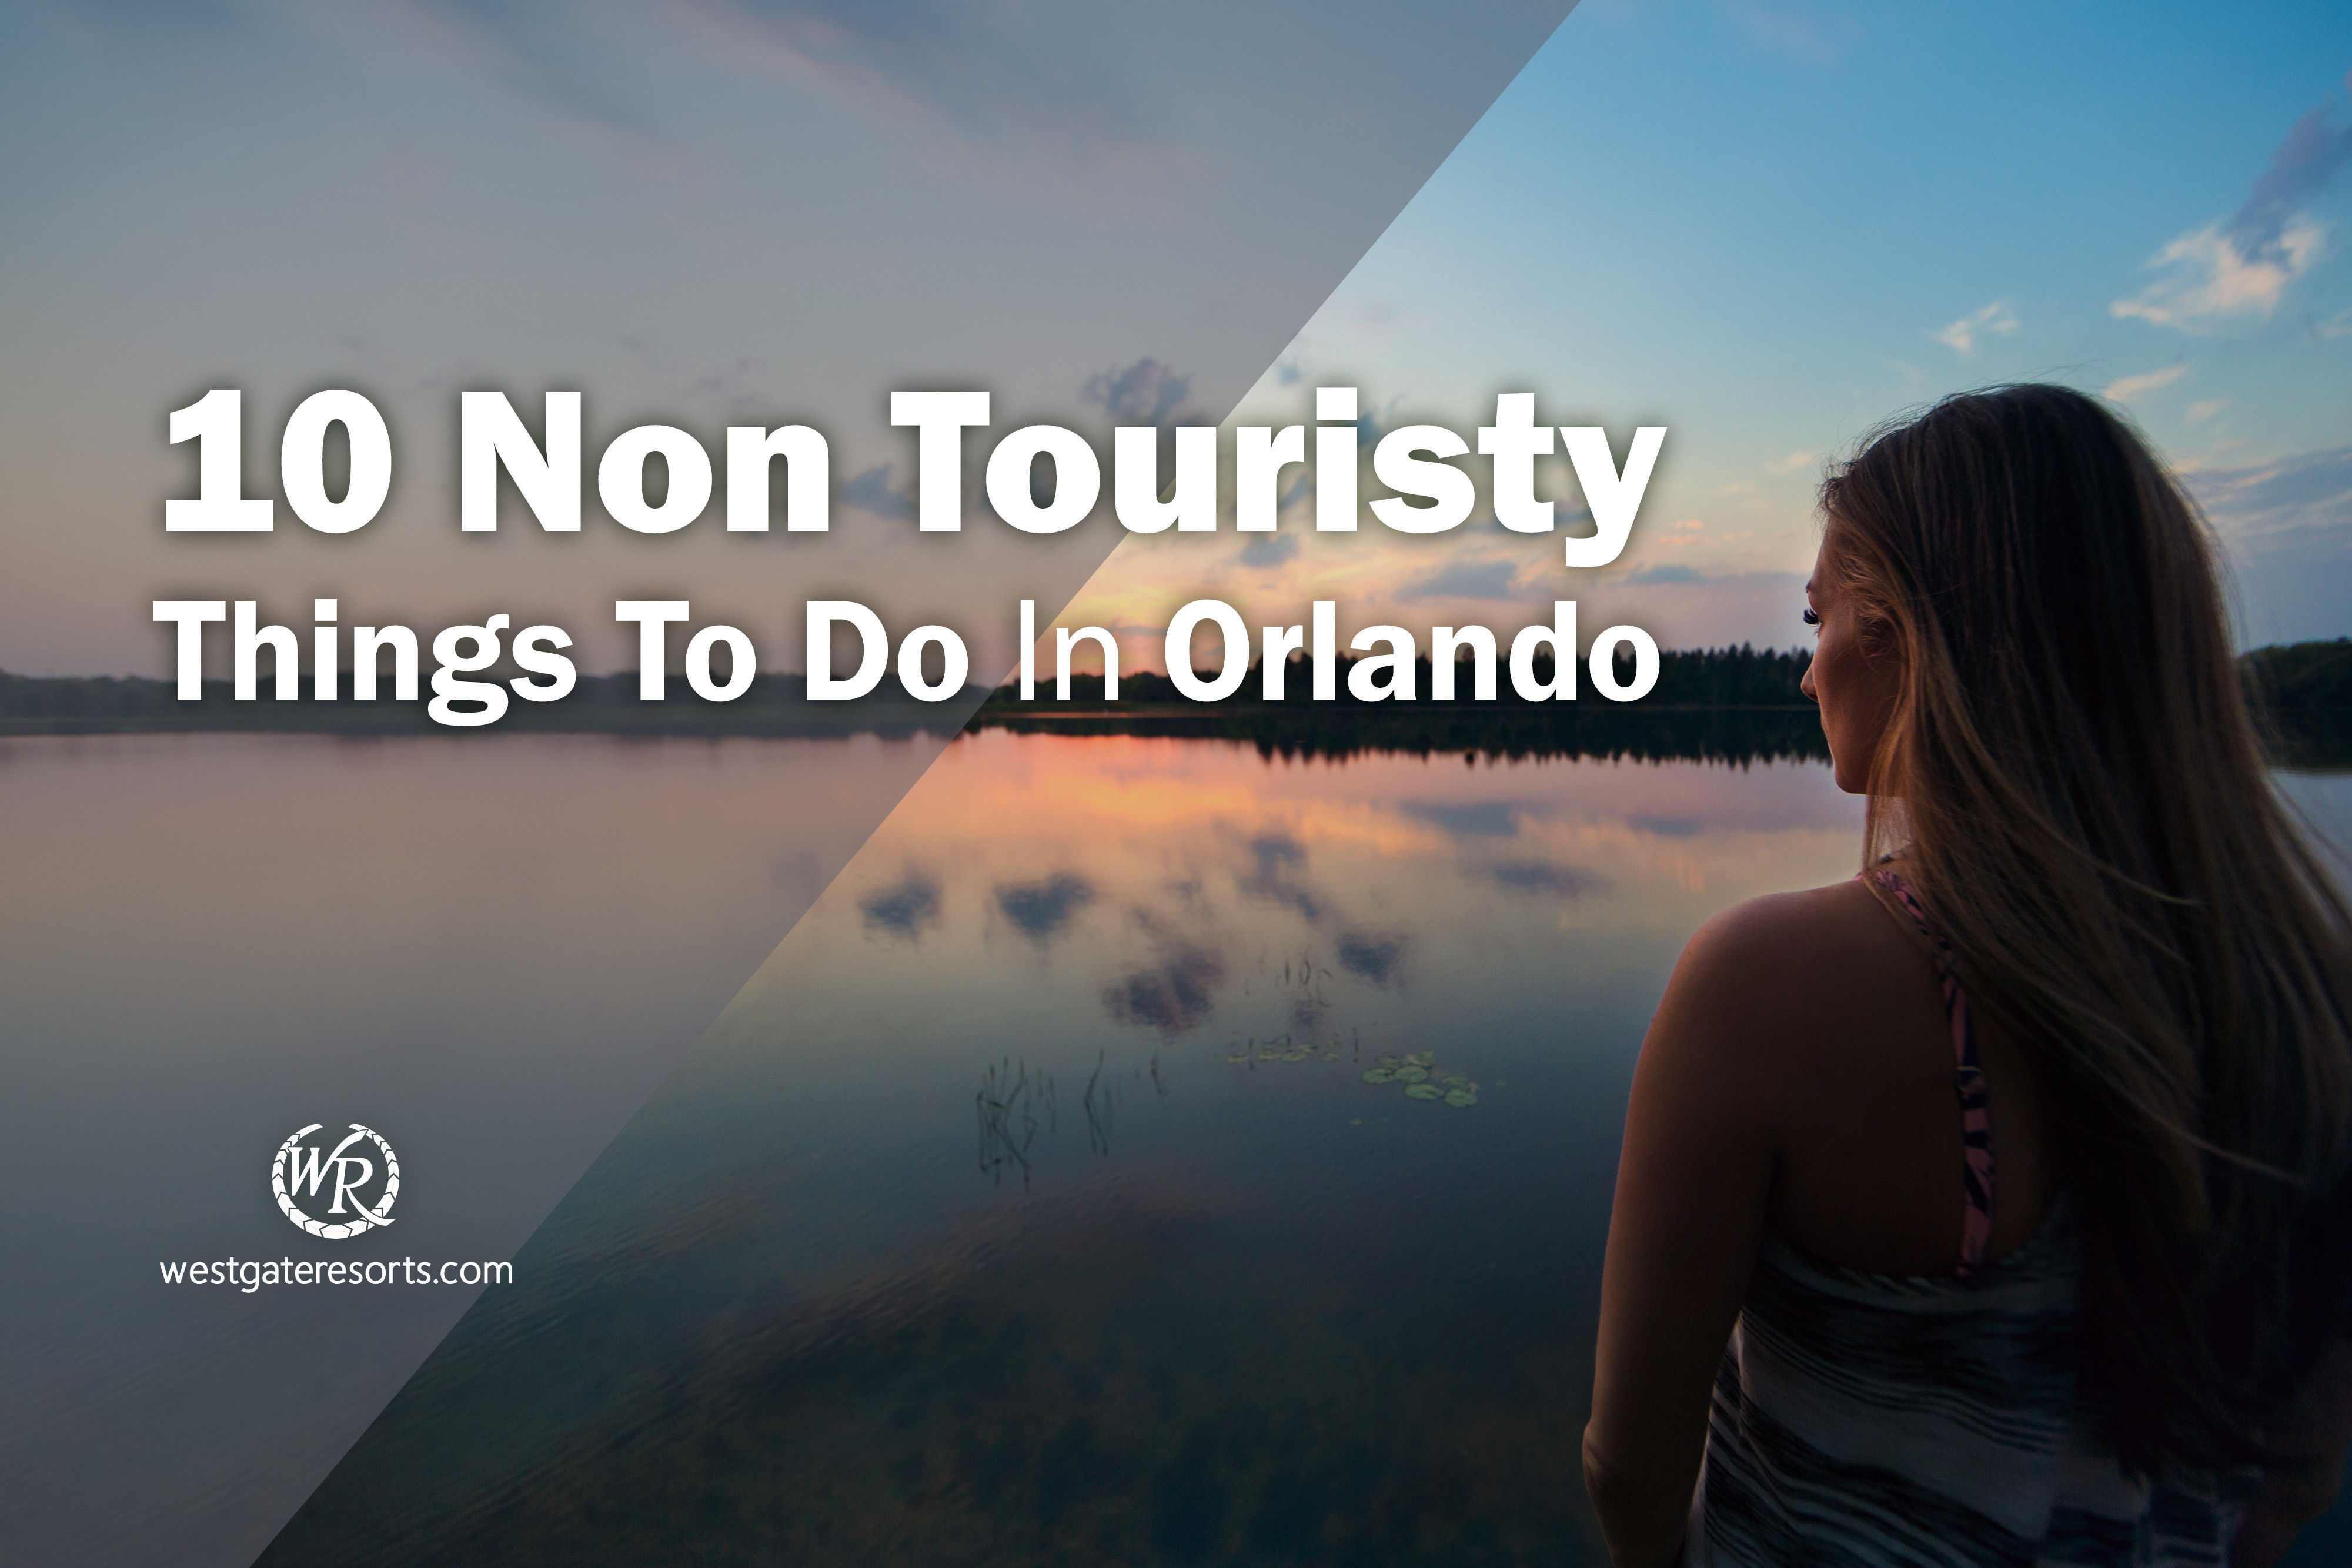 10 cosas no turísticas para hacer en Orlando | Orlando no turístico